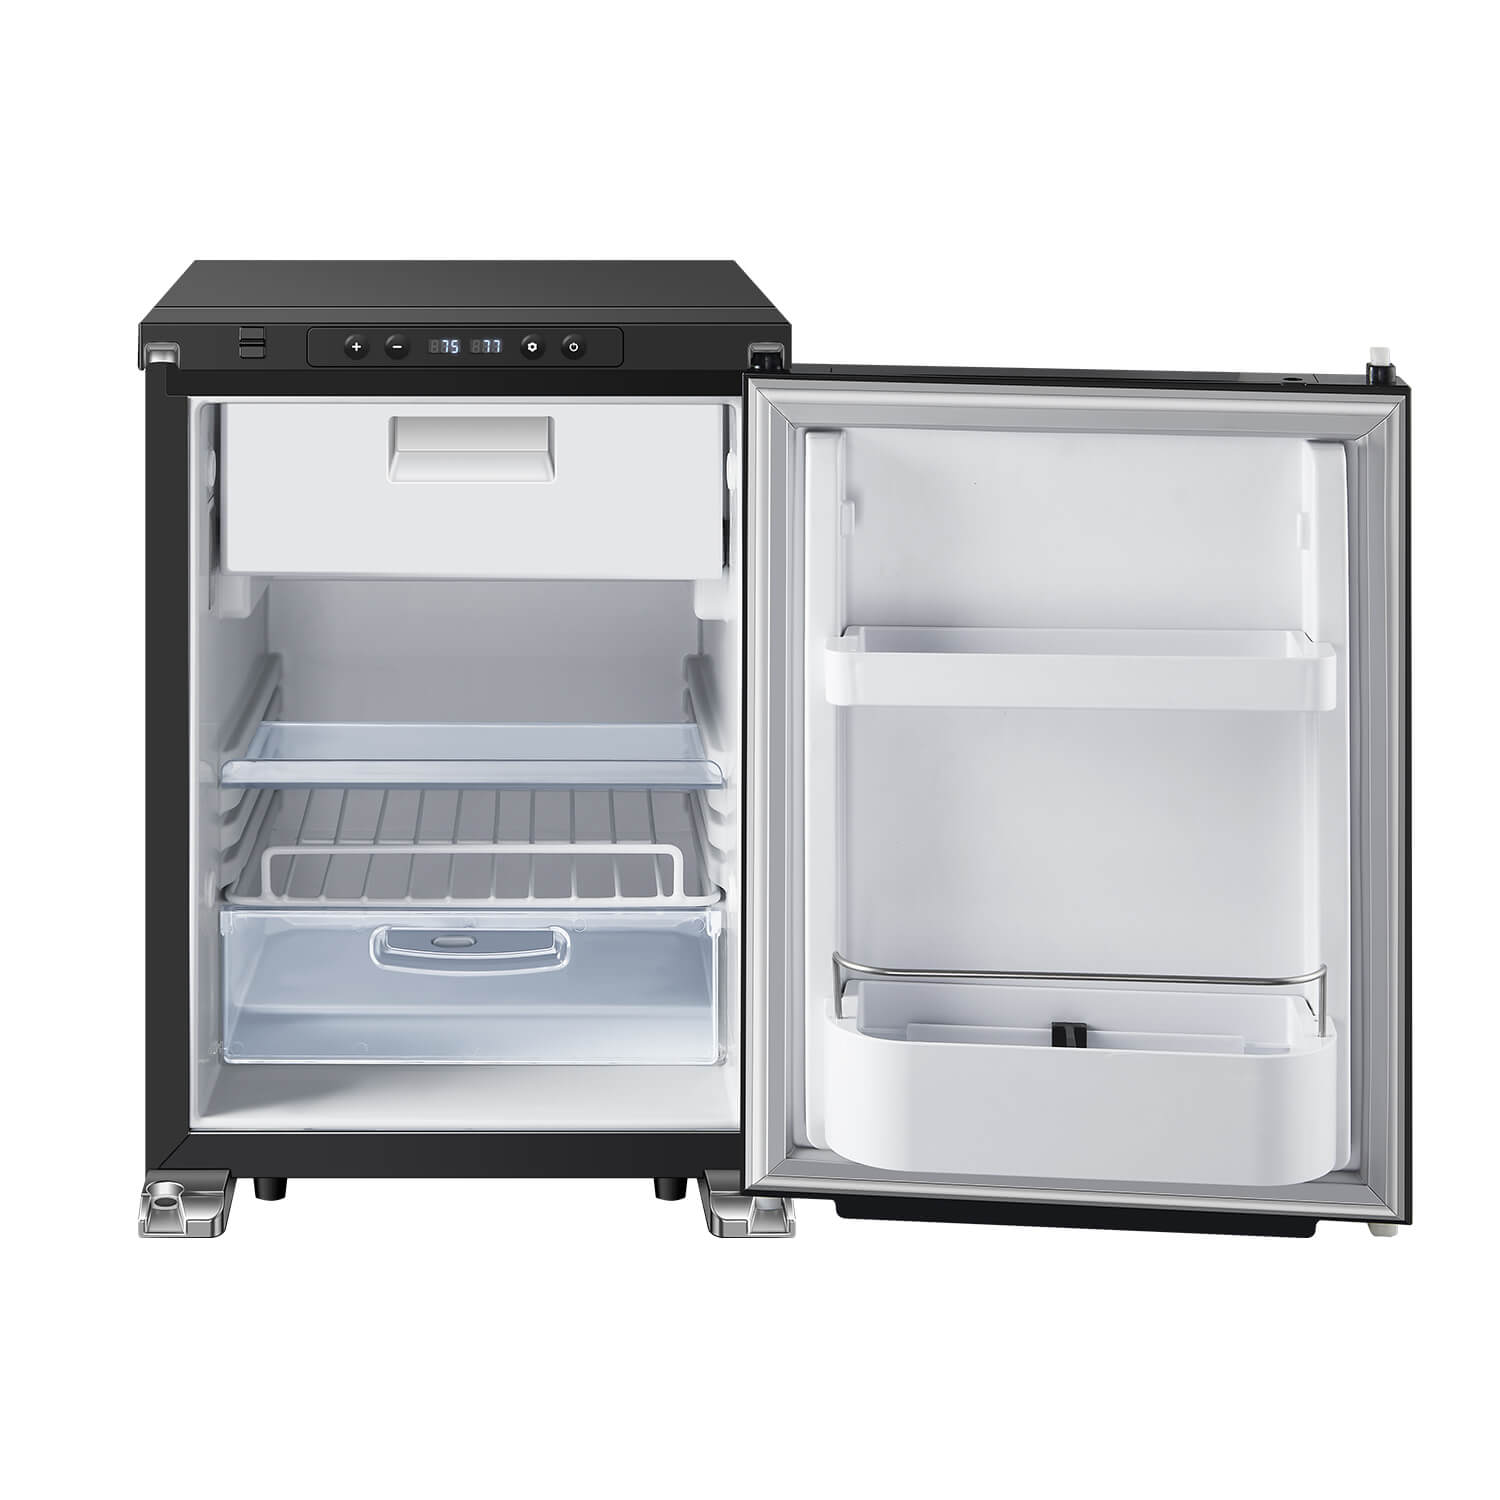 Mini Smeg ❤️  Mini fridge in bedroom, Retro fridge, Smeg